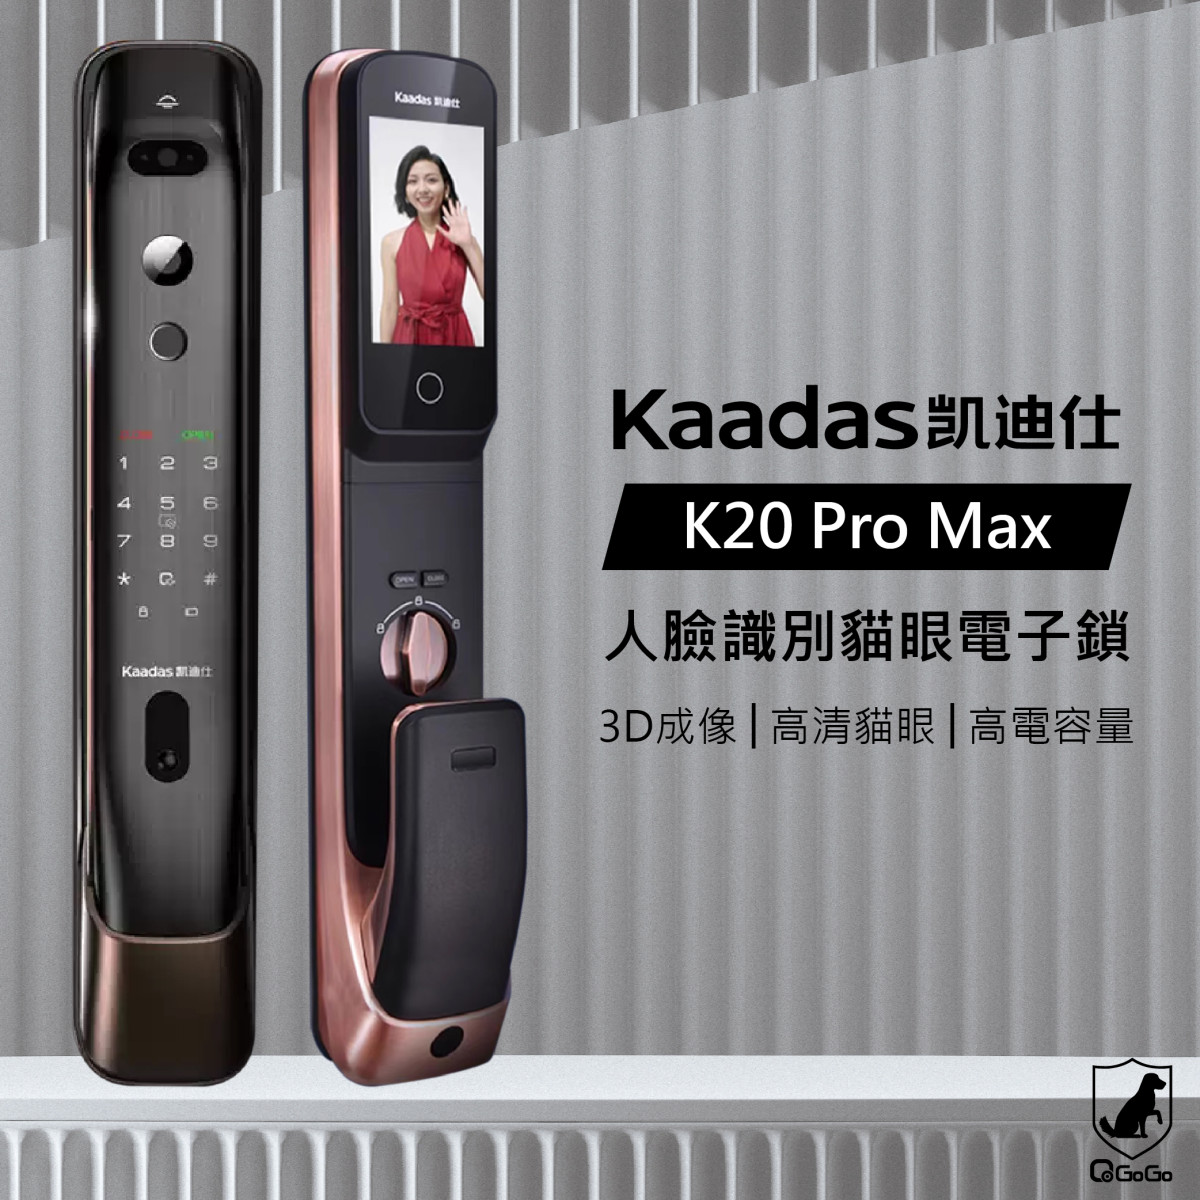 【凱迪仕Kaadas】K20 Pro Max 人臉識別貓眼電子鎖 可視門鈴 室內感應 超高電池容量